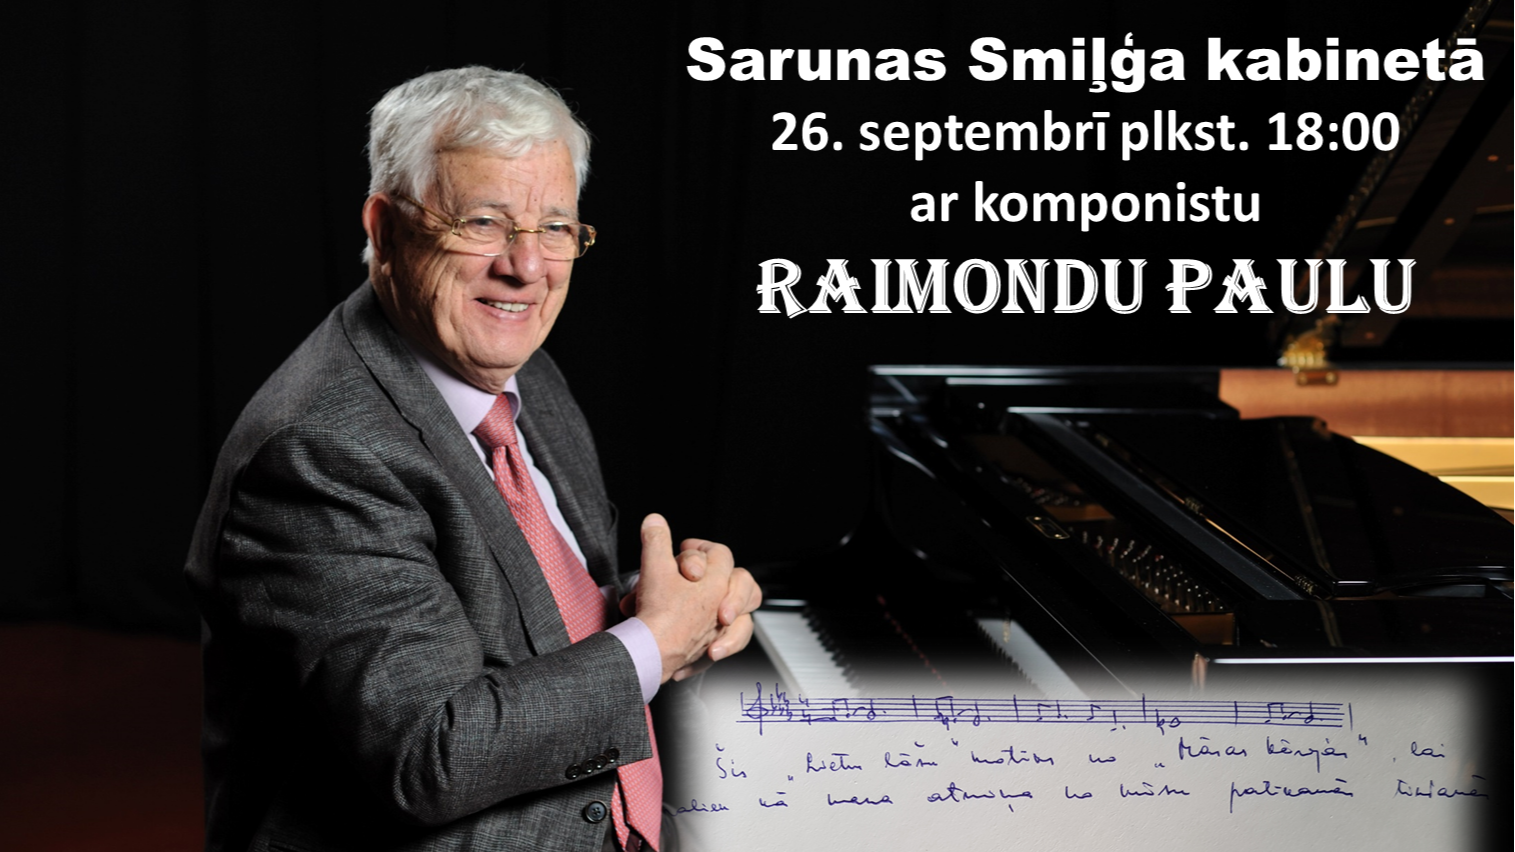 “Sarunas Smiļģa kabinetā”  ar komponistu Raimondu Paulu